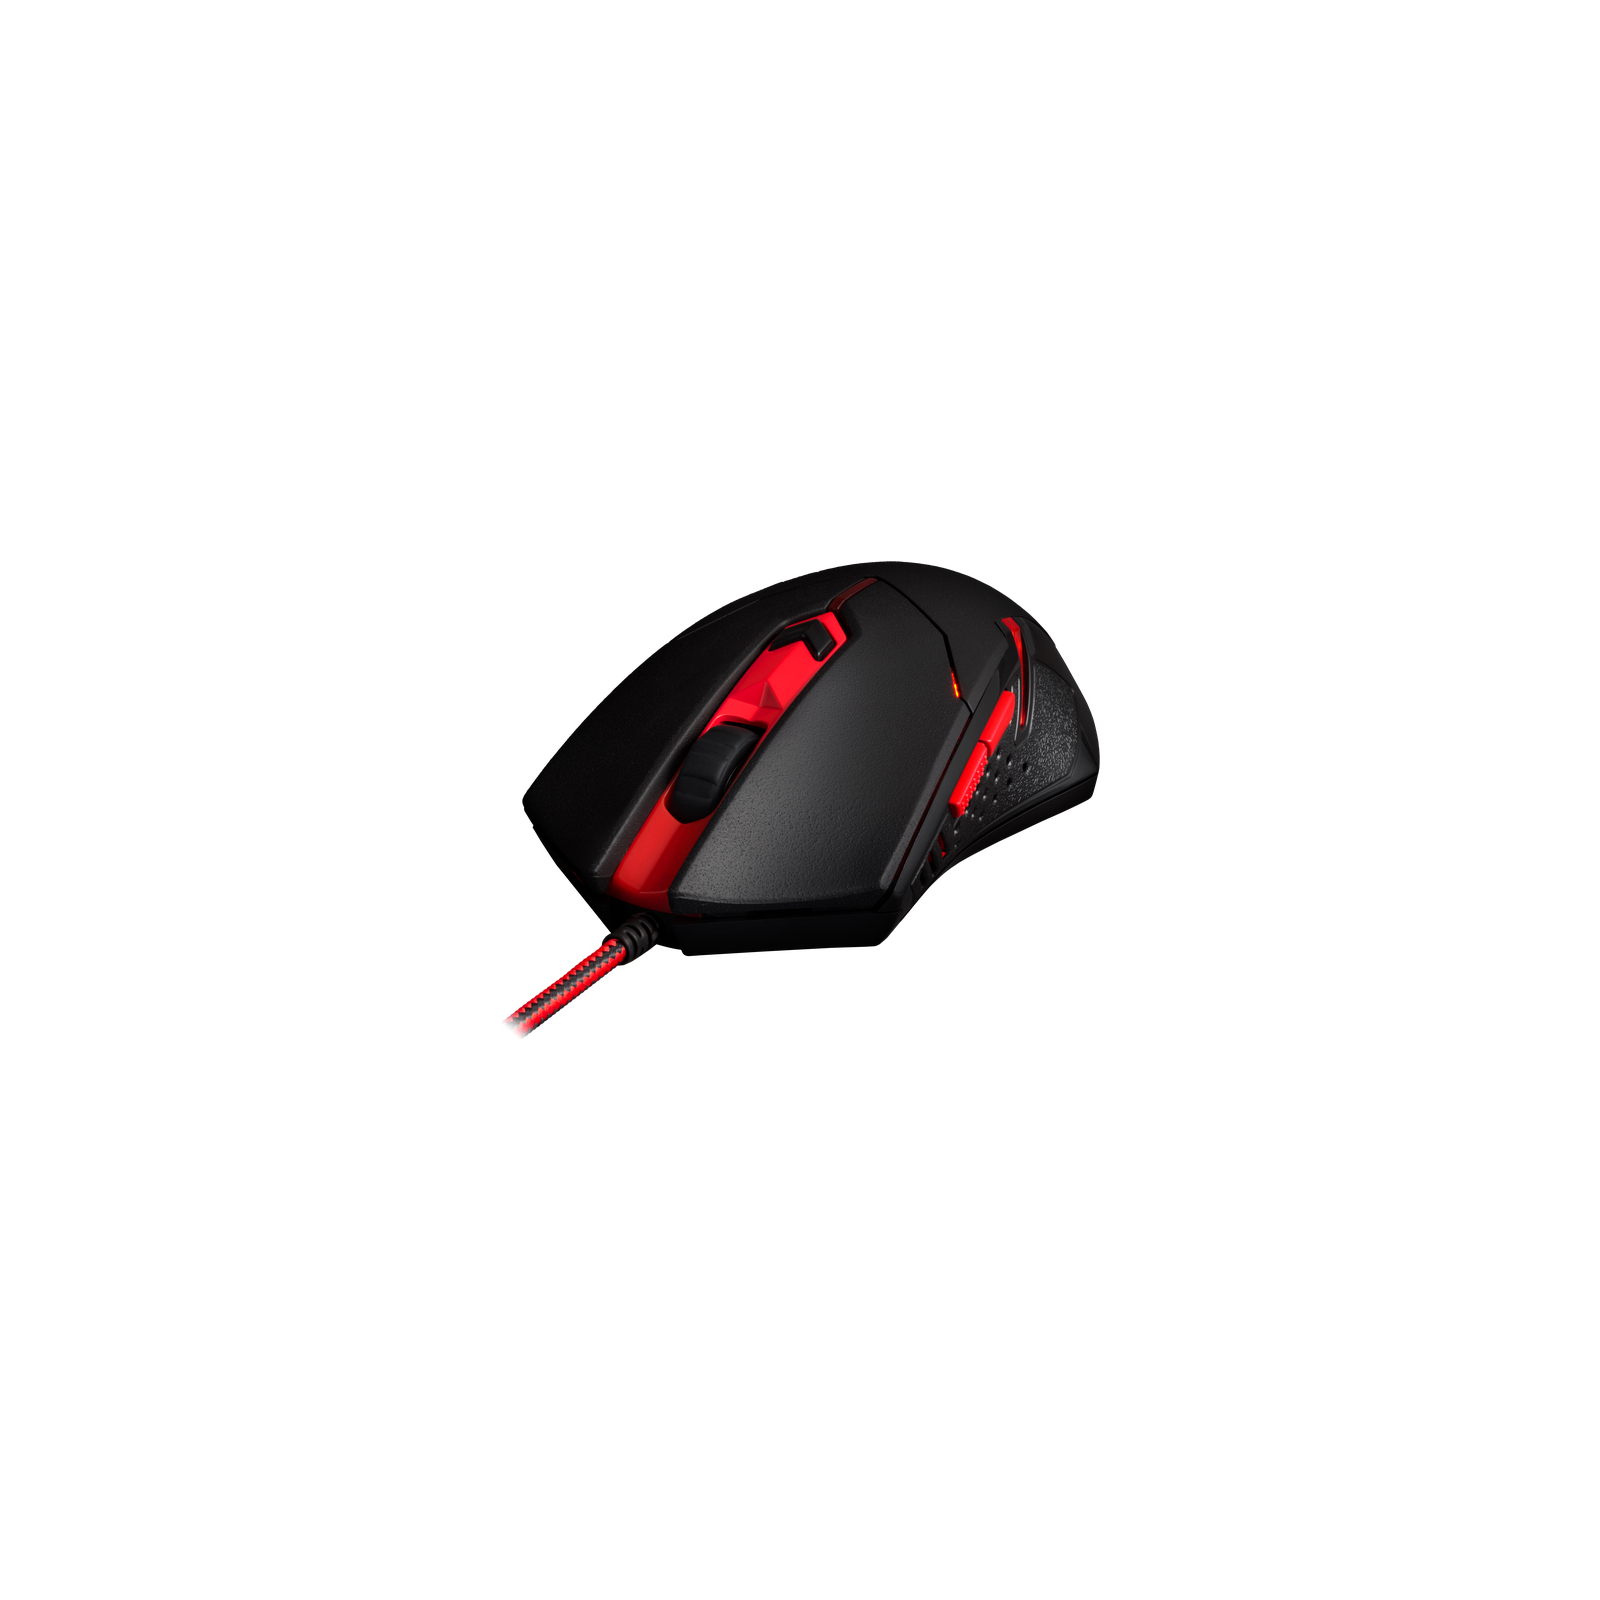 Мышка Redragon M601BA USB Black-Red + Килимок (78226) изображение 7